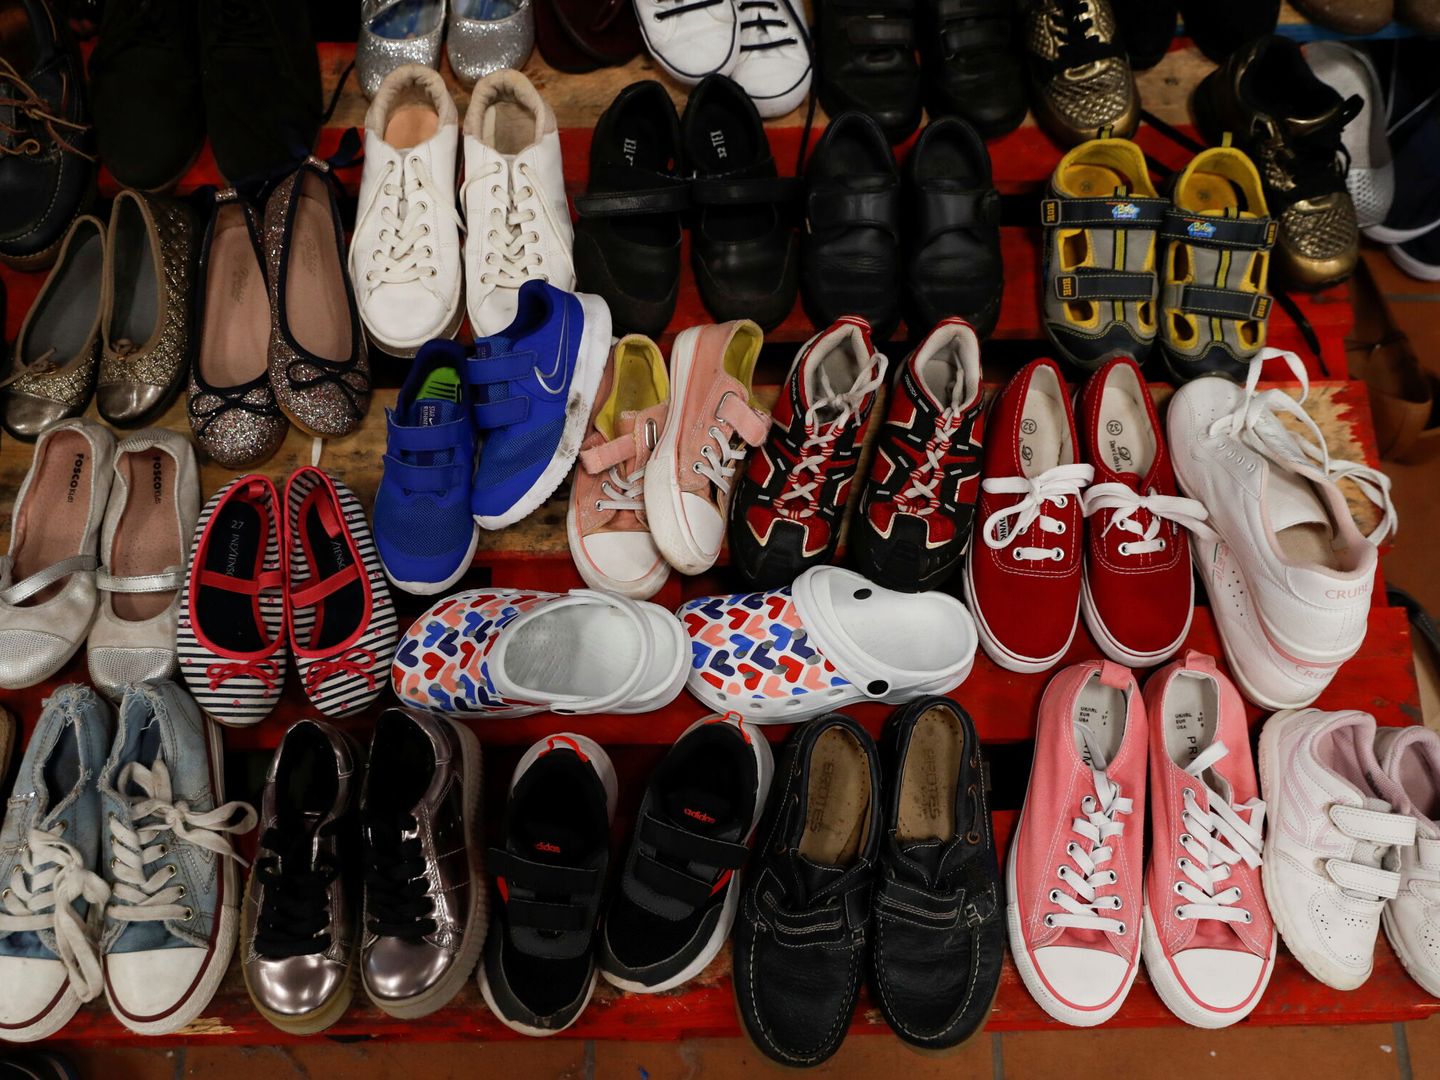 Los zapatos donados se muestran en el complejo deportivo de Tazacorte. (Reuters)